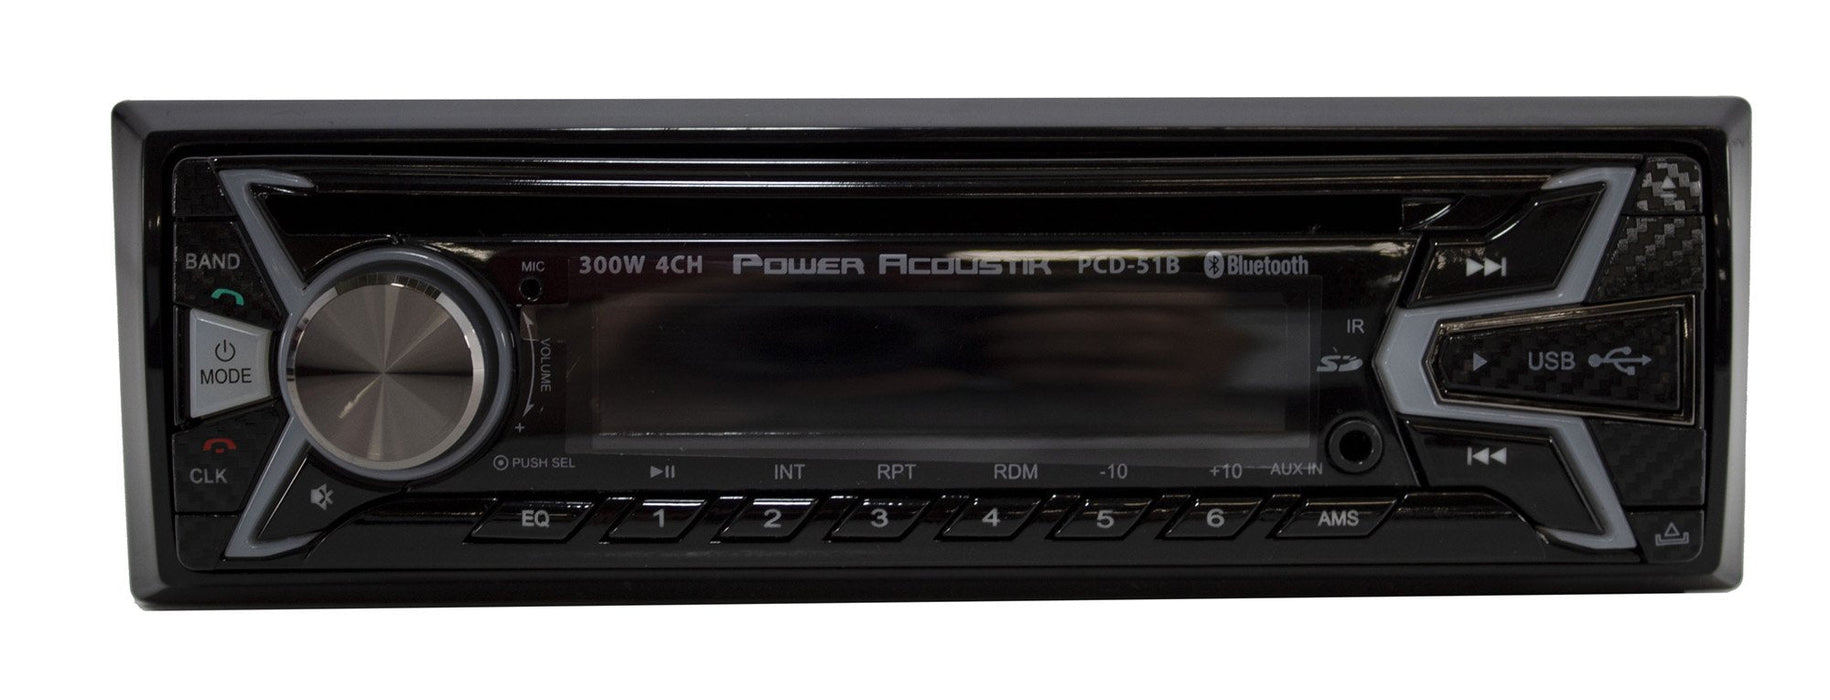 Power Acoustik Car Radio In-Dash V2 Single Din FM Receiver w/ Bluetooth PCD-51B